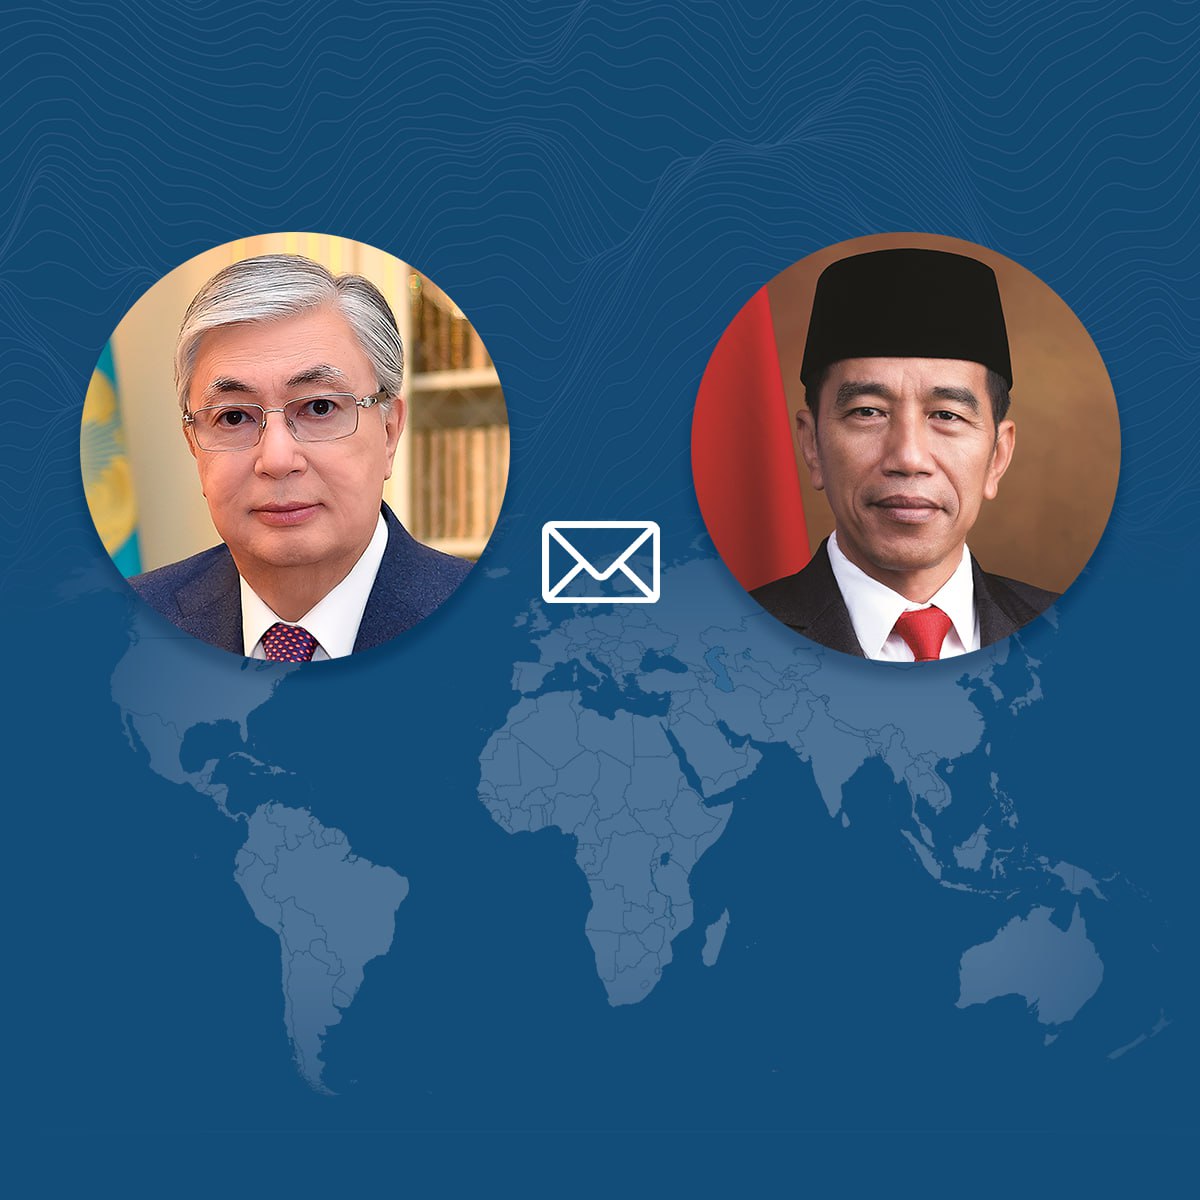 Мемлекет басшысы Индонезия президентіне құттықтау жеделхатын жолдады